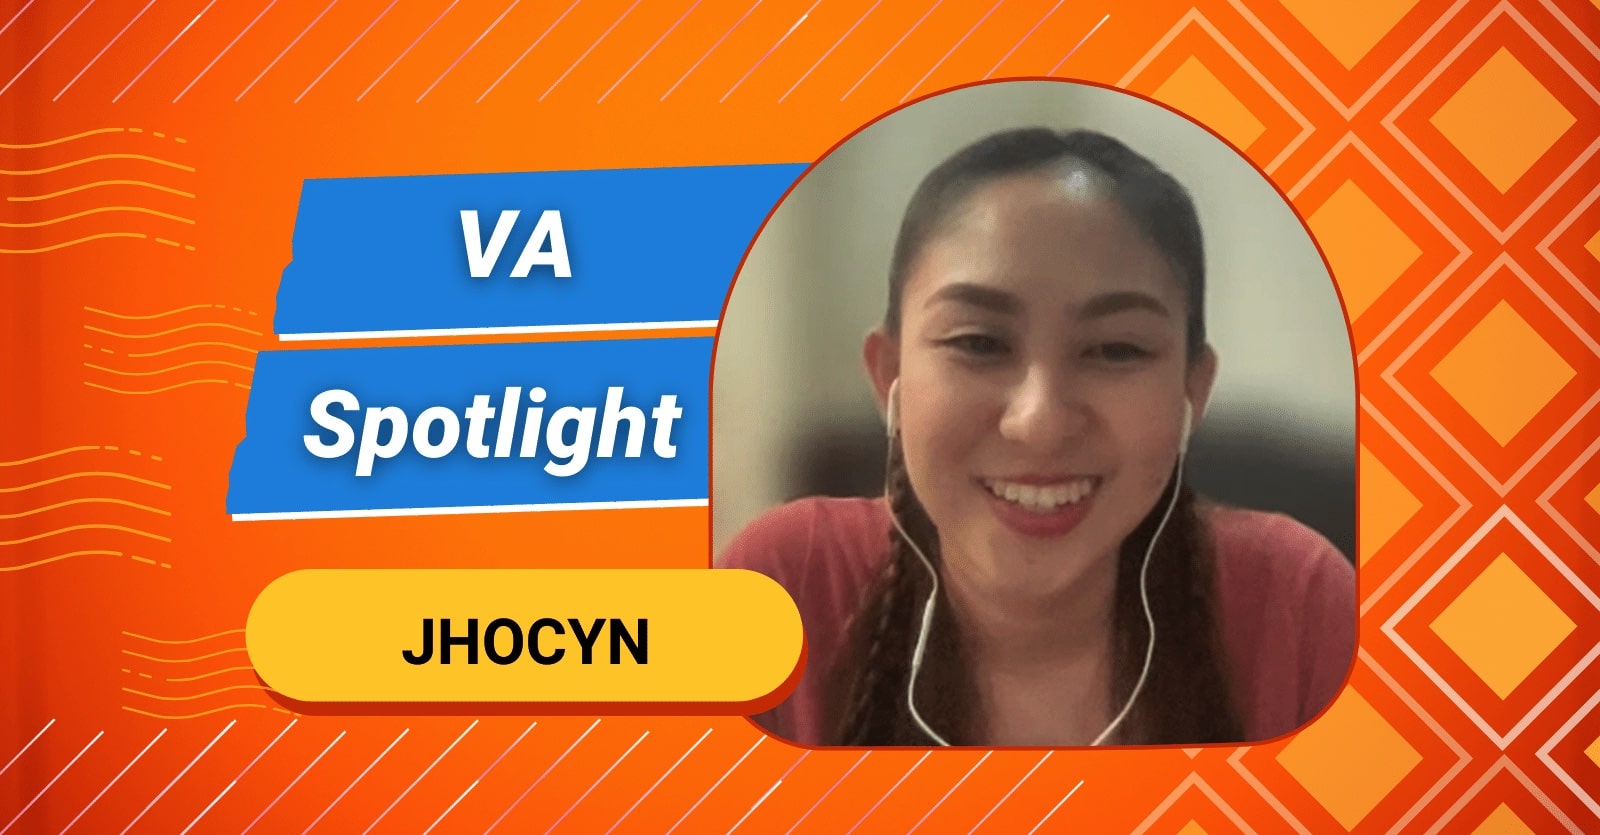 VA Spotlight Jhocyn